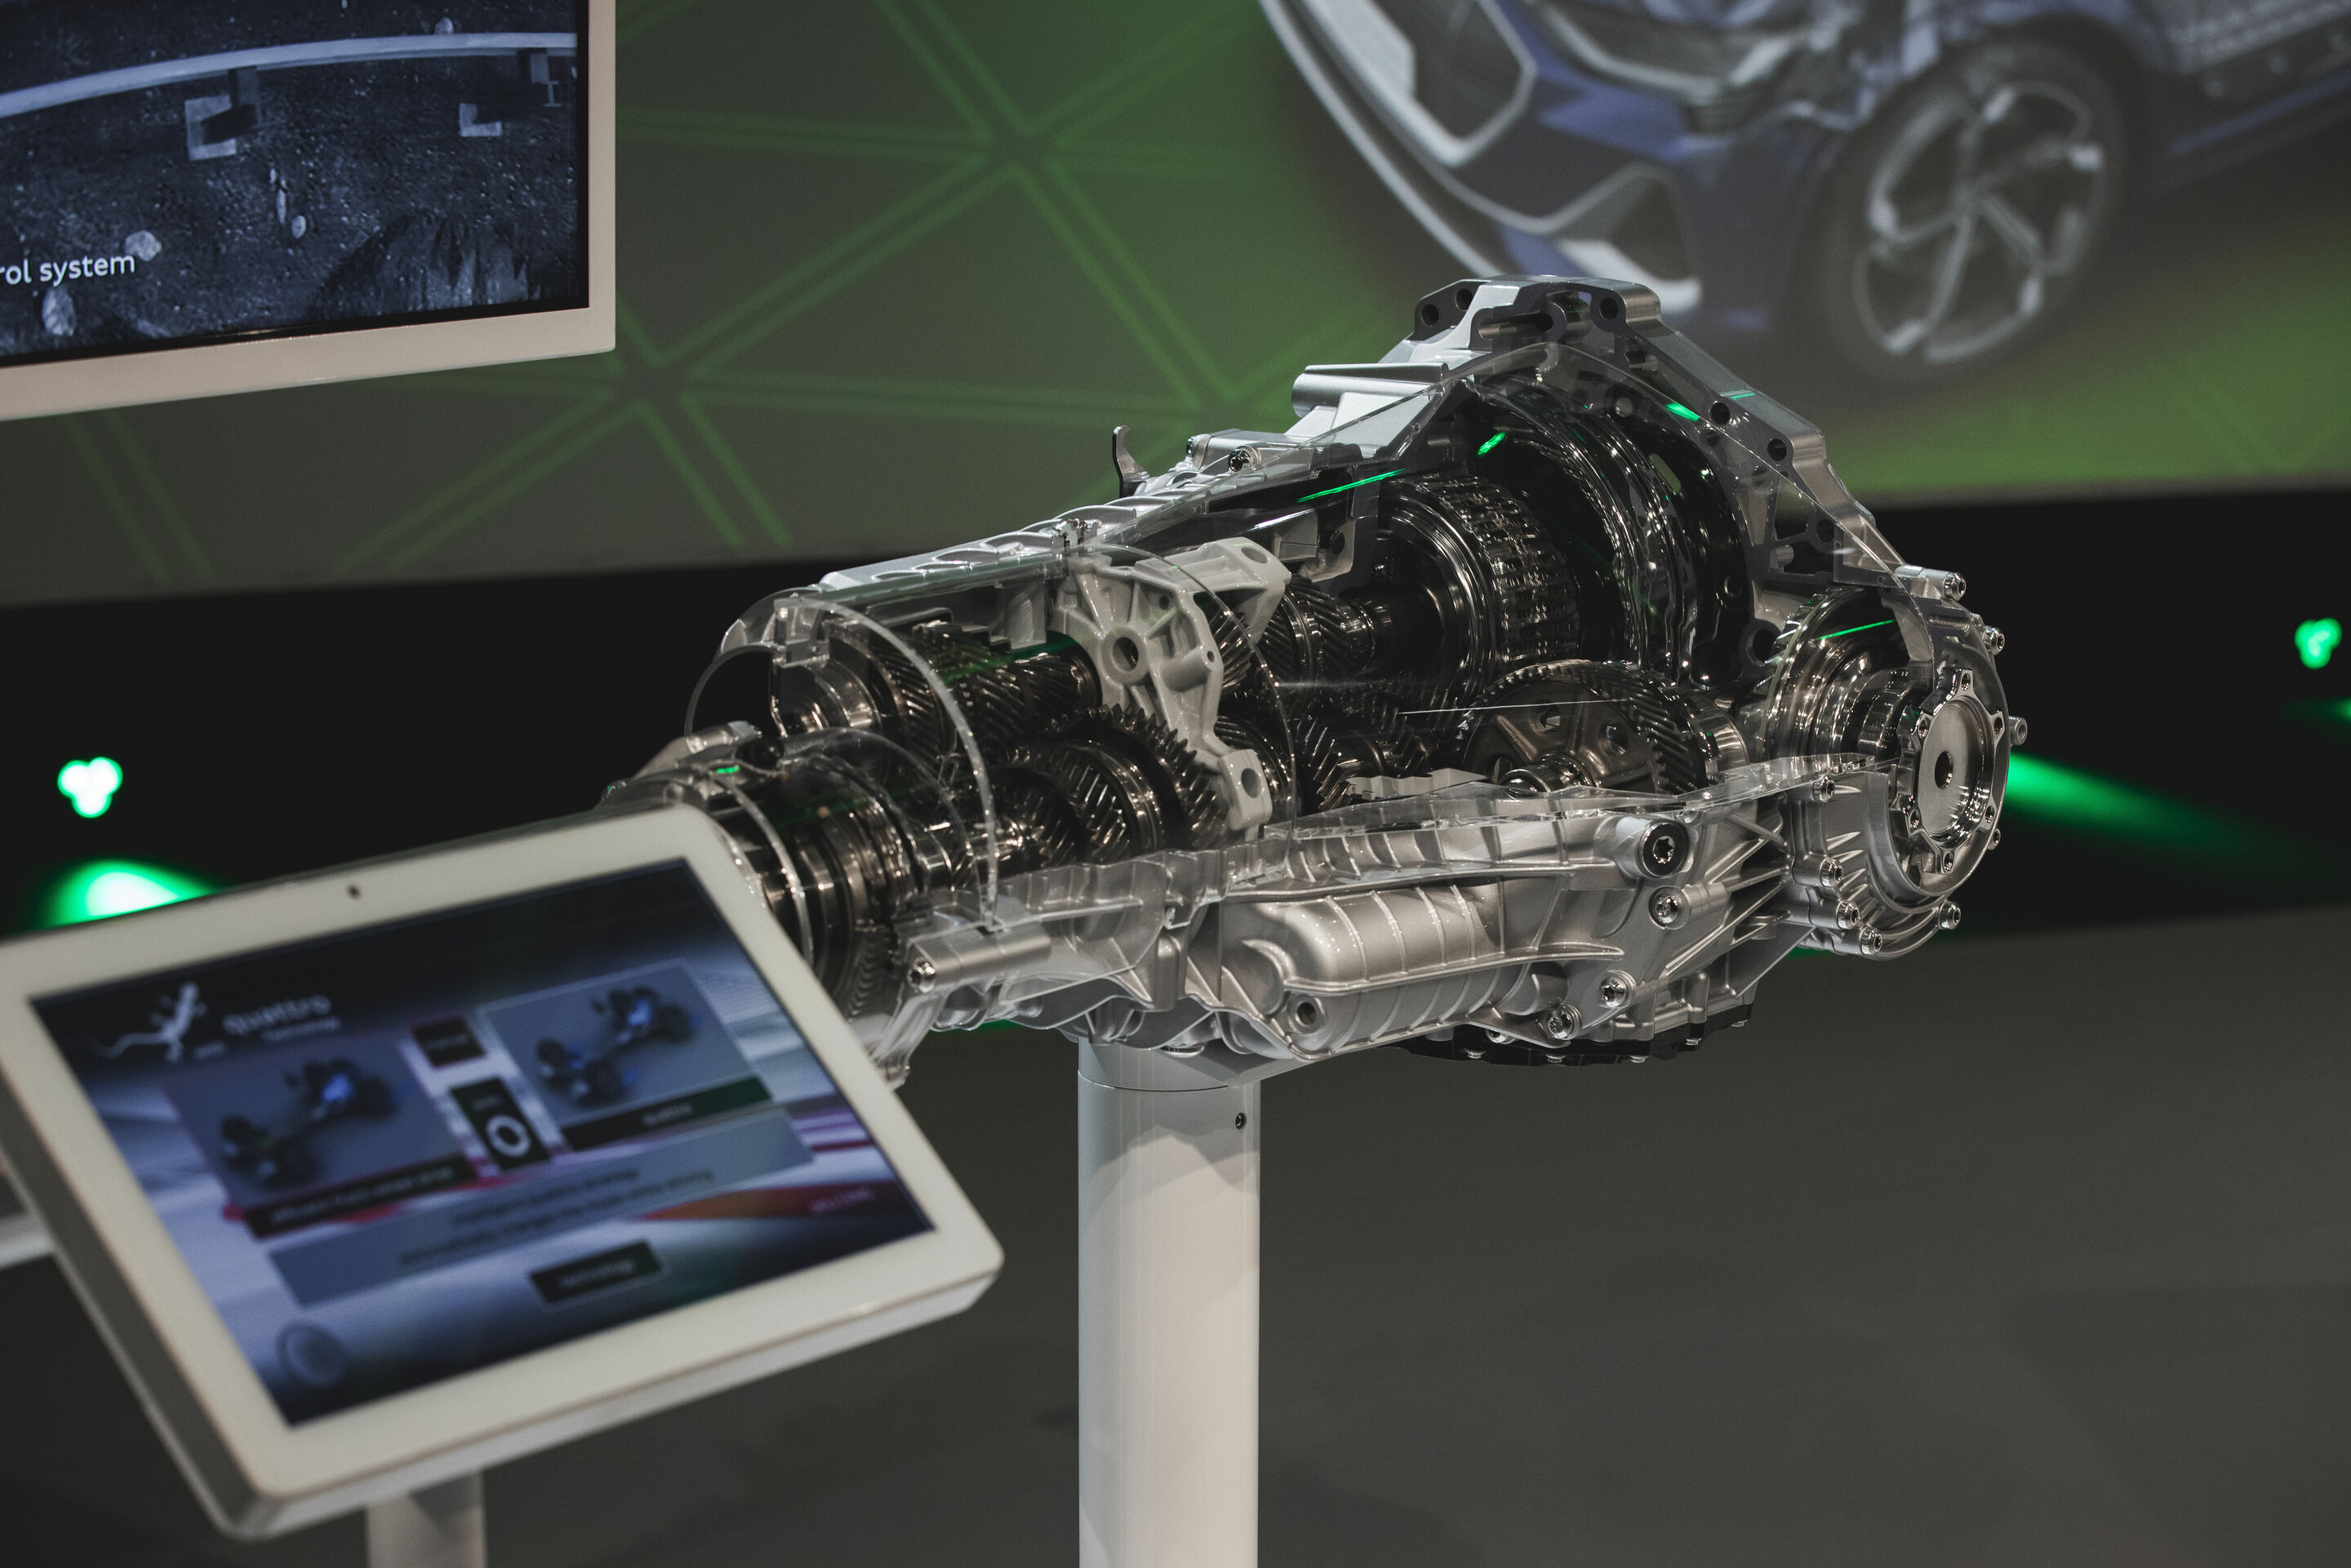 Audi TechTalk: quattro – efficient and electric